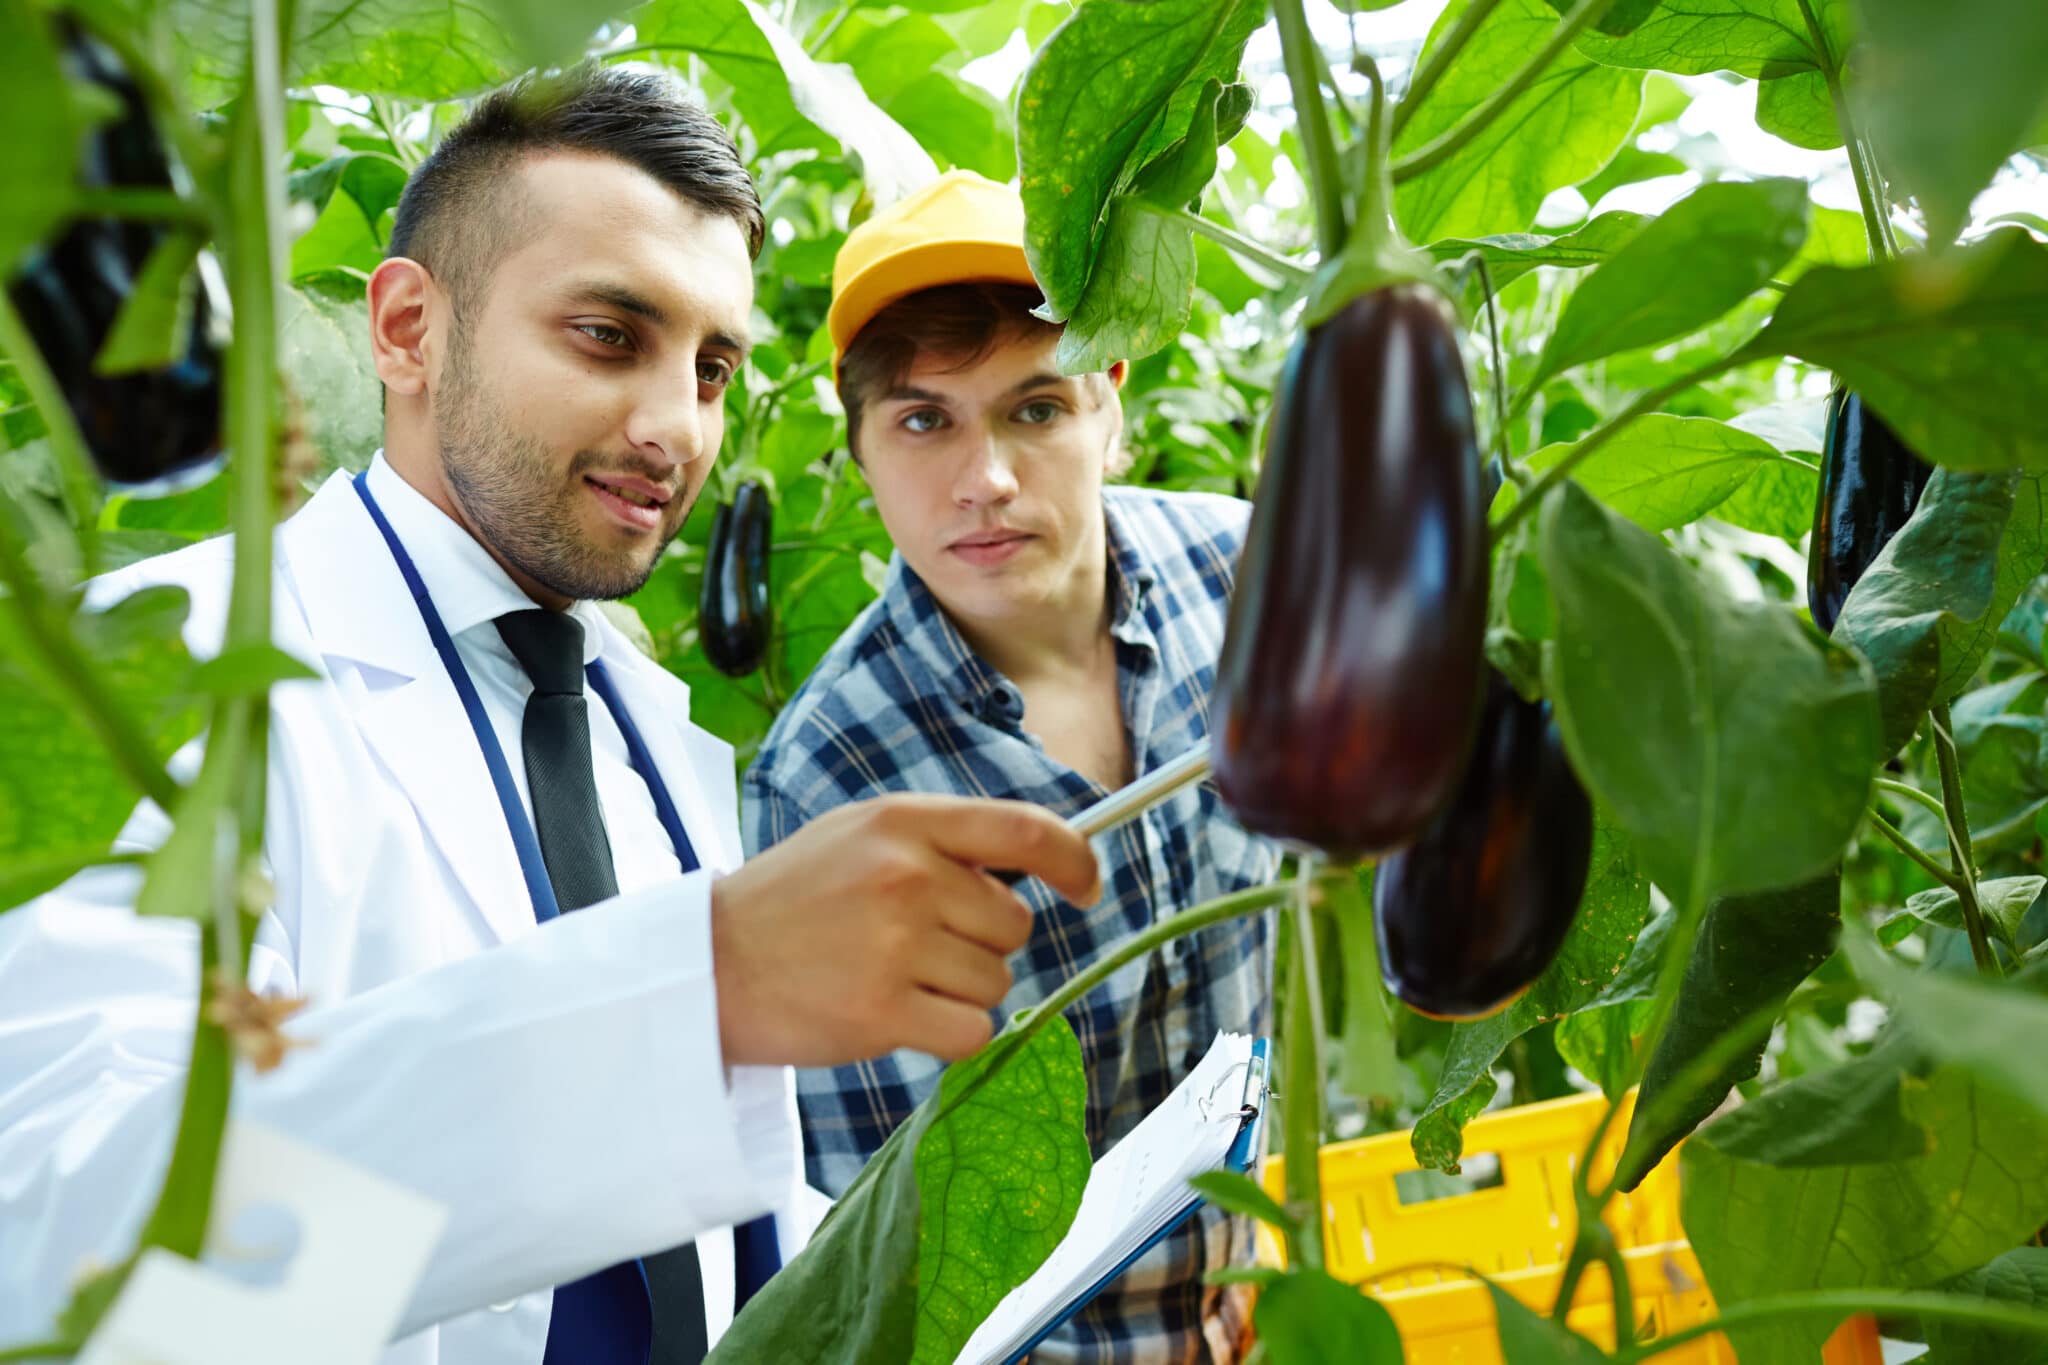 Man in lab coat inspecting aubergines